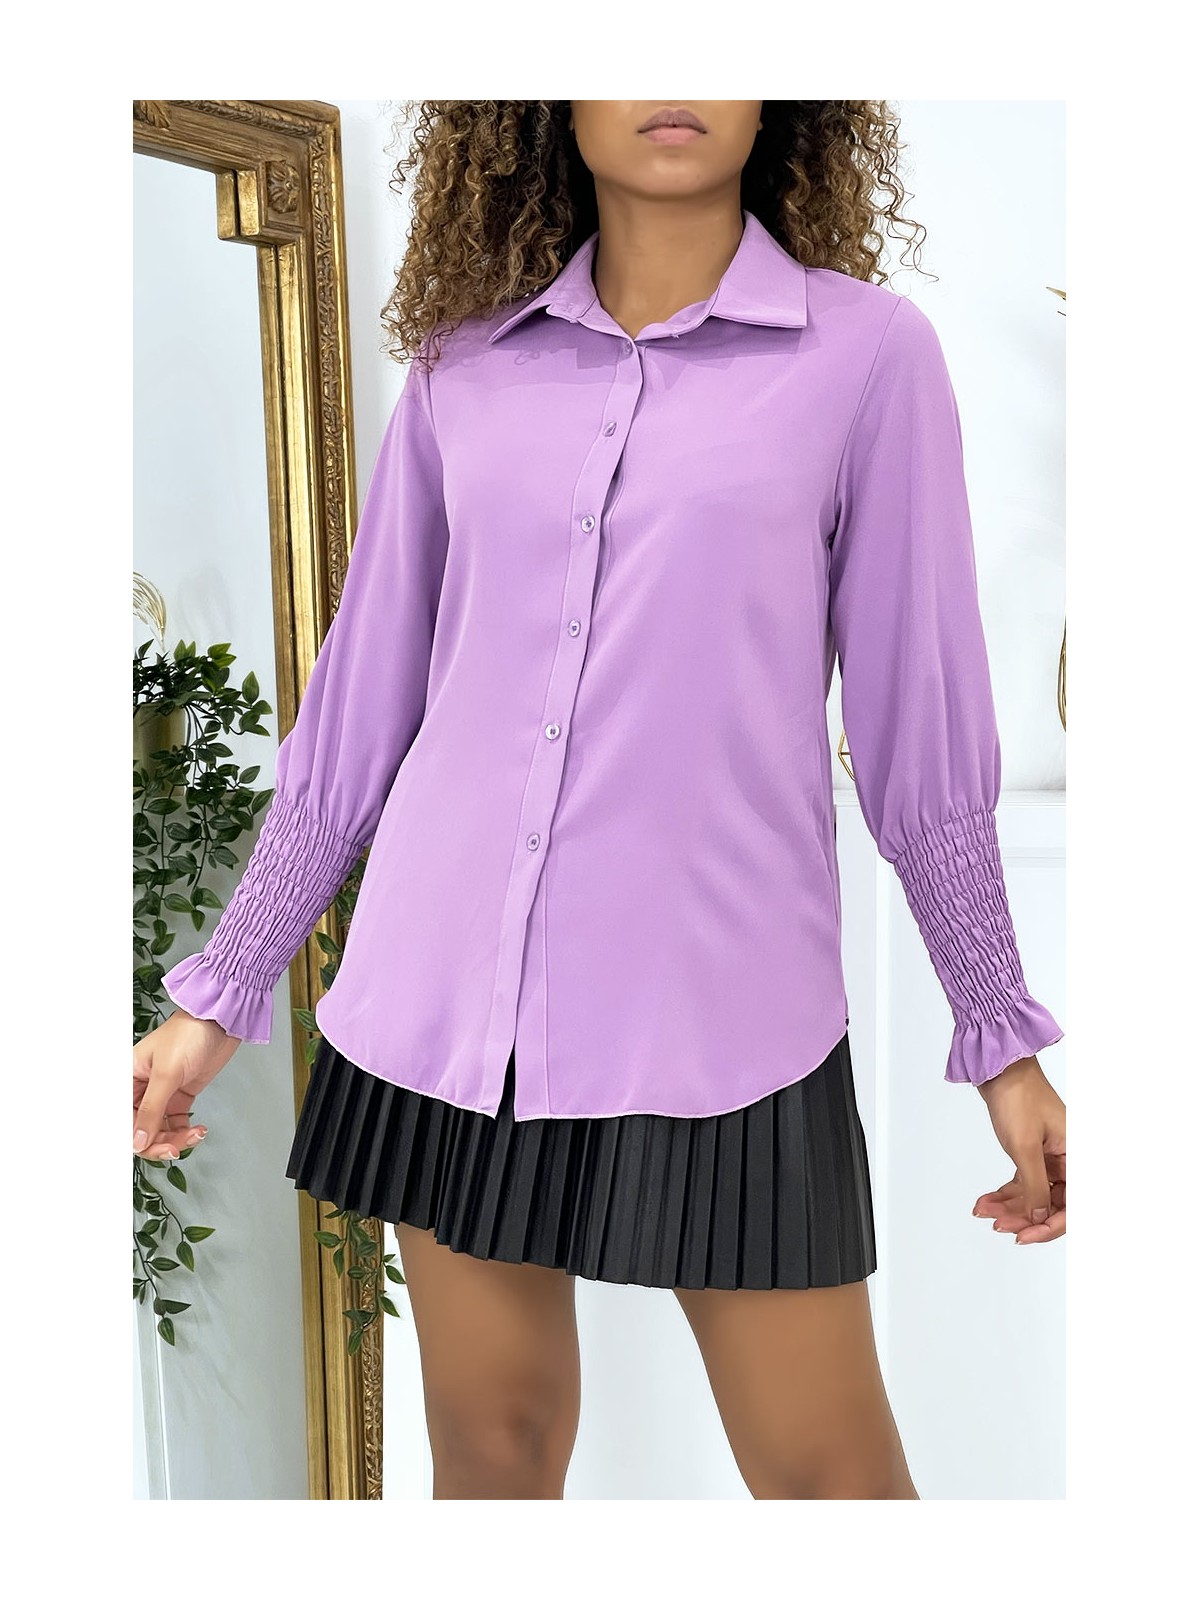 Chemise lilas avec fronce aux manches - 2